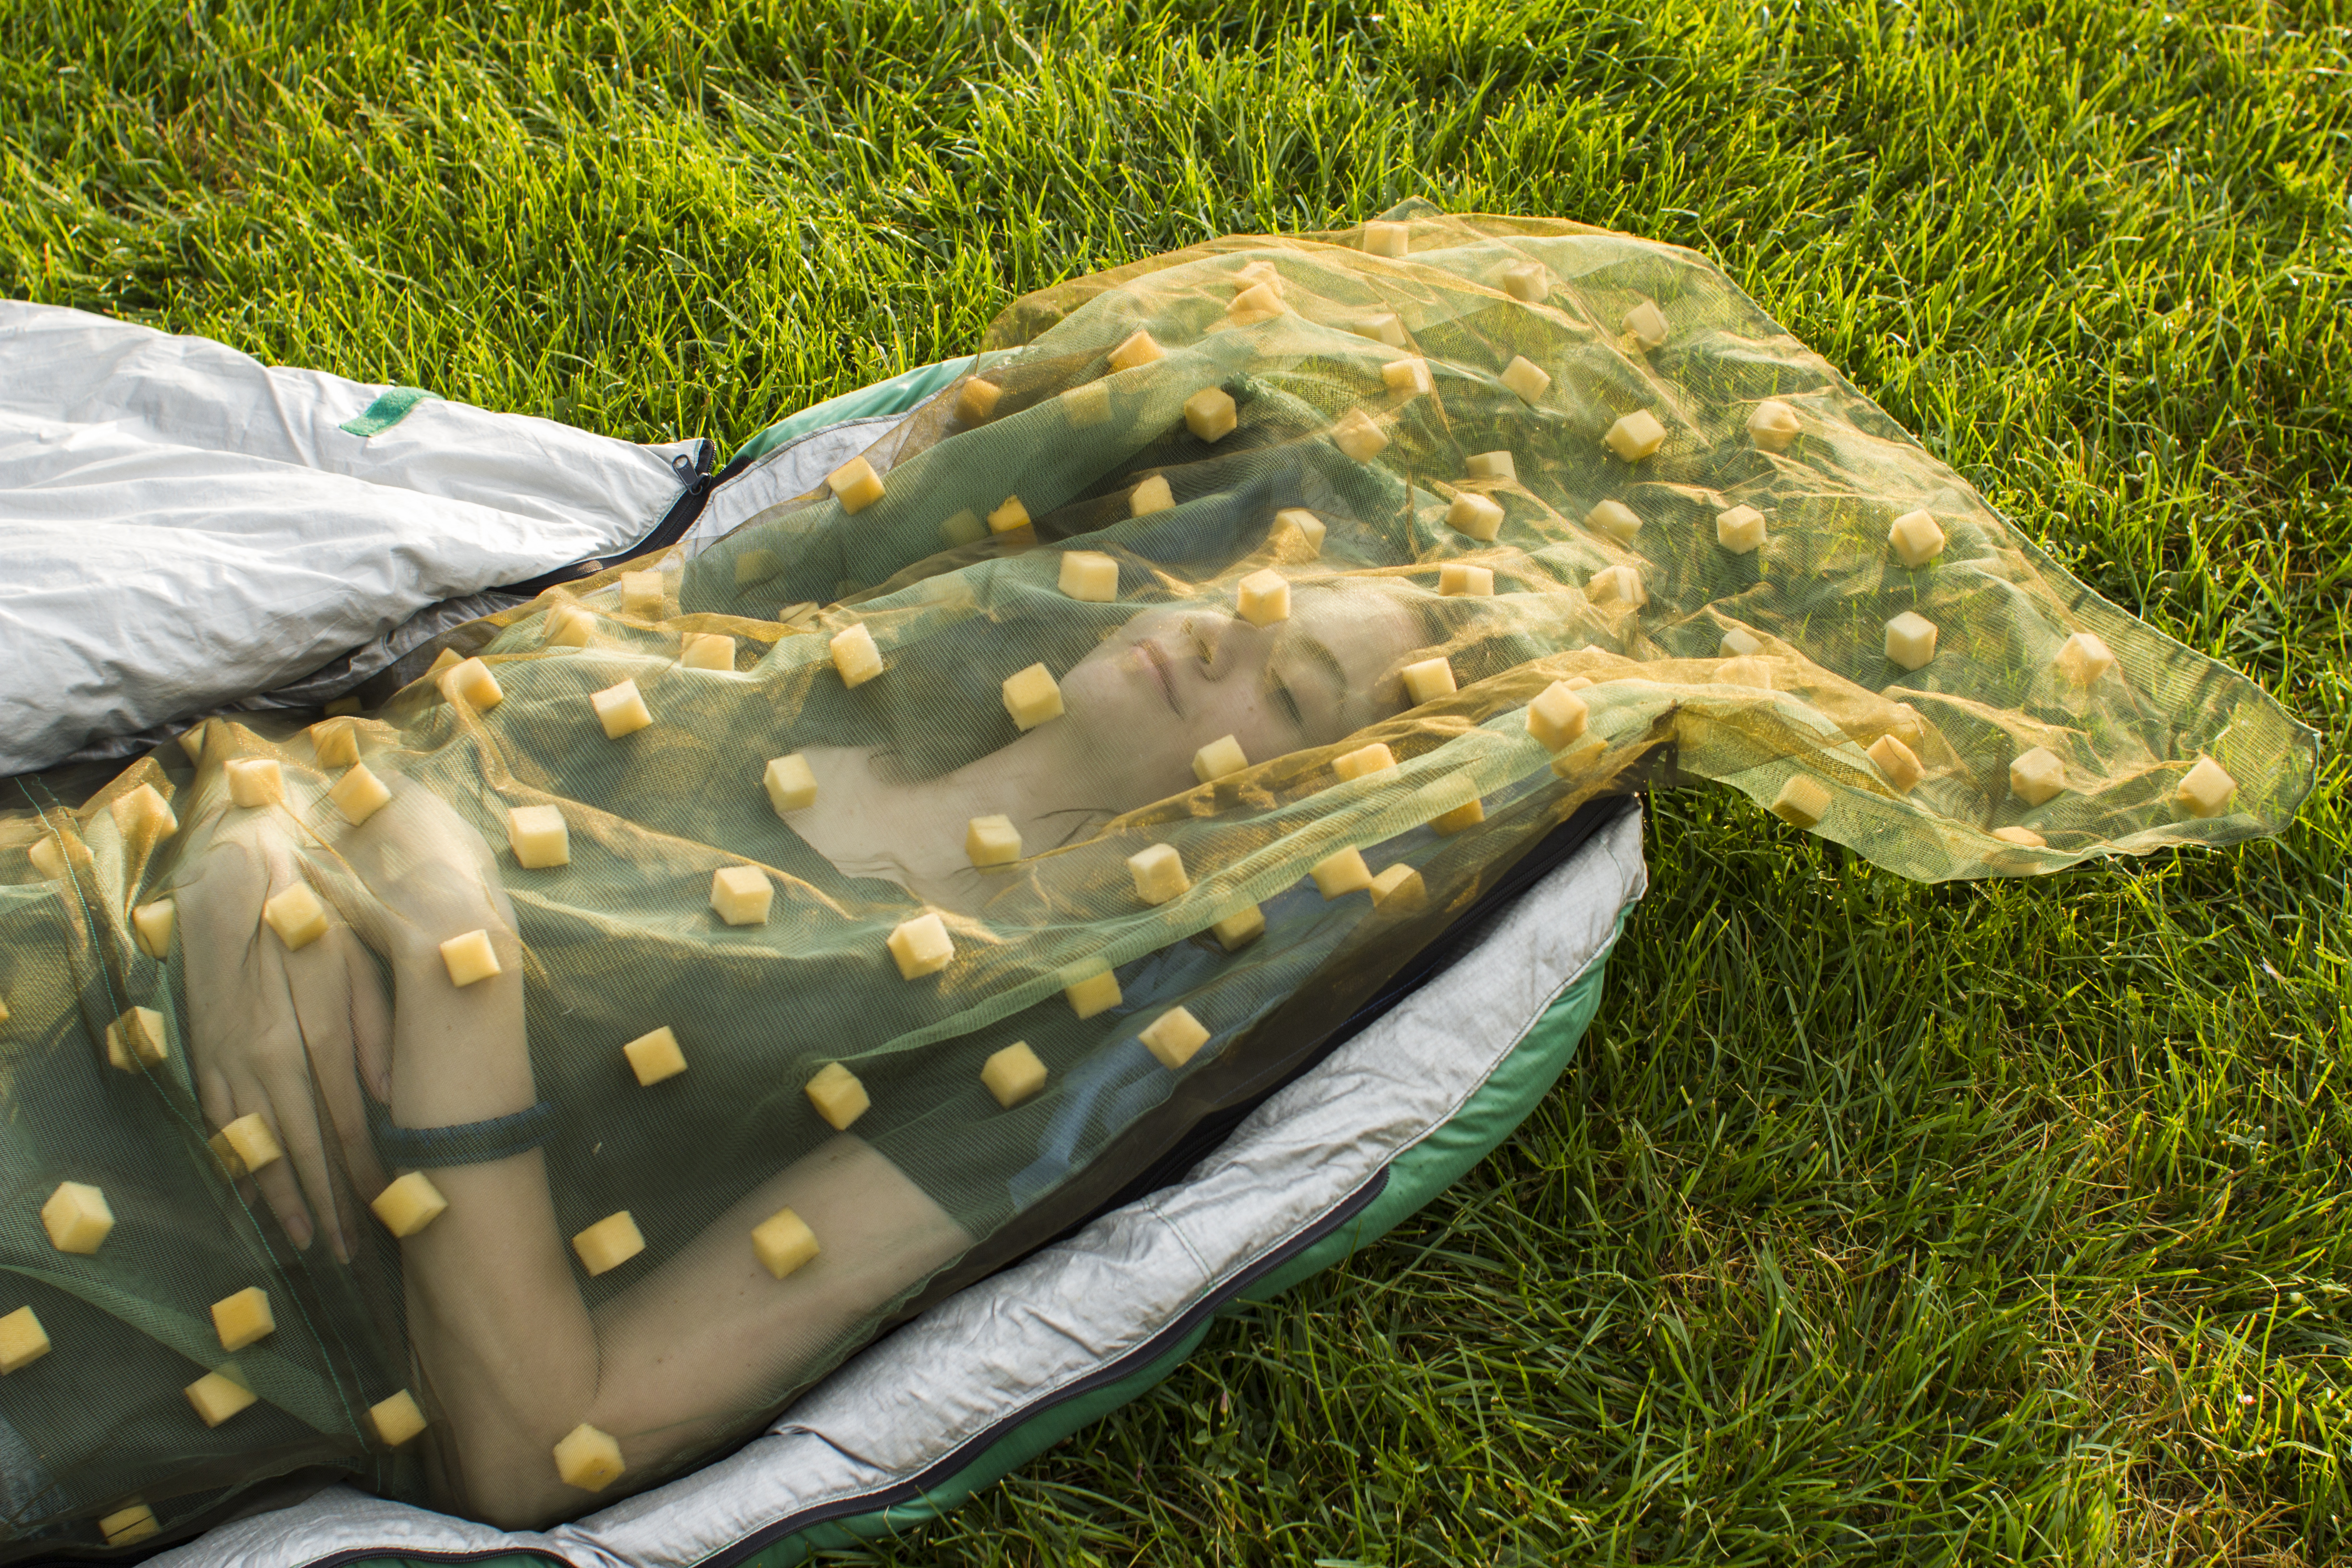 mosquito proof sleeping bag warmlite net top